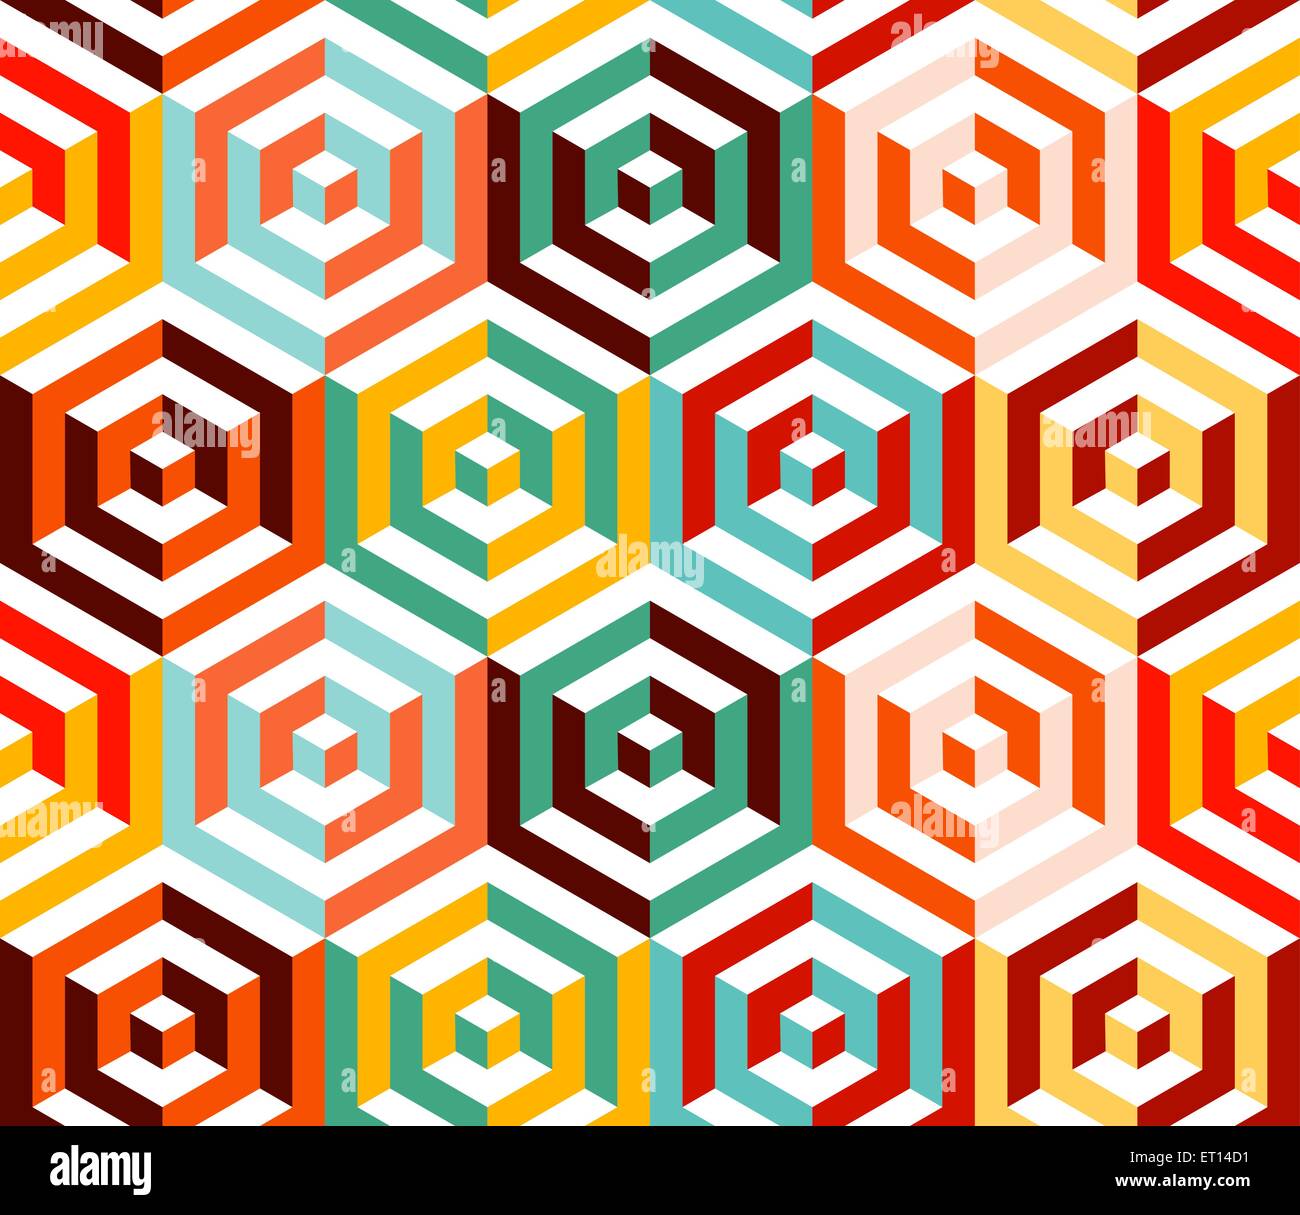 Abstract 3D isométrique hexagonale transparente de formes colorés rétro motif de fond. Idéal pour les dessins de tissu, papier d'emballage imprimer Illustration de Vecteur